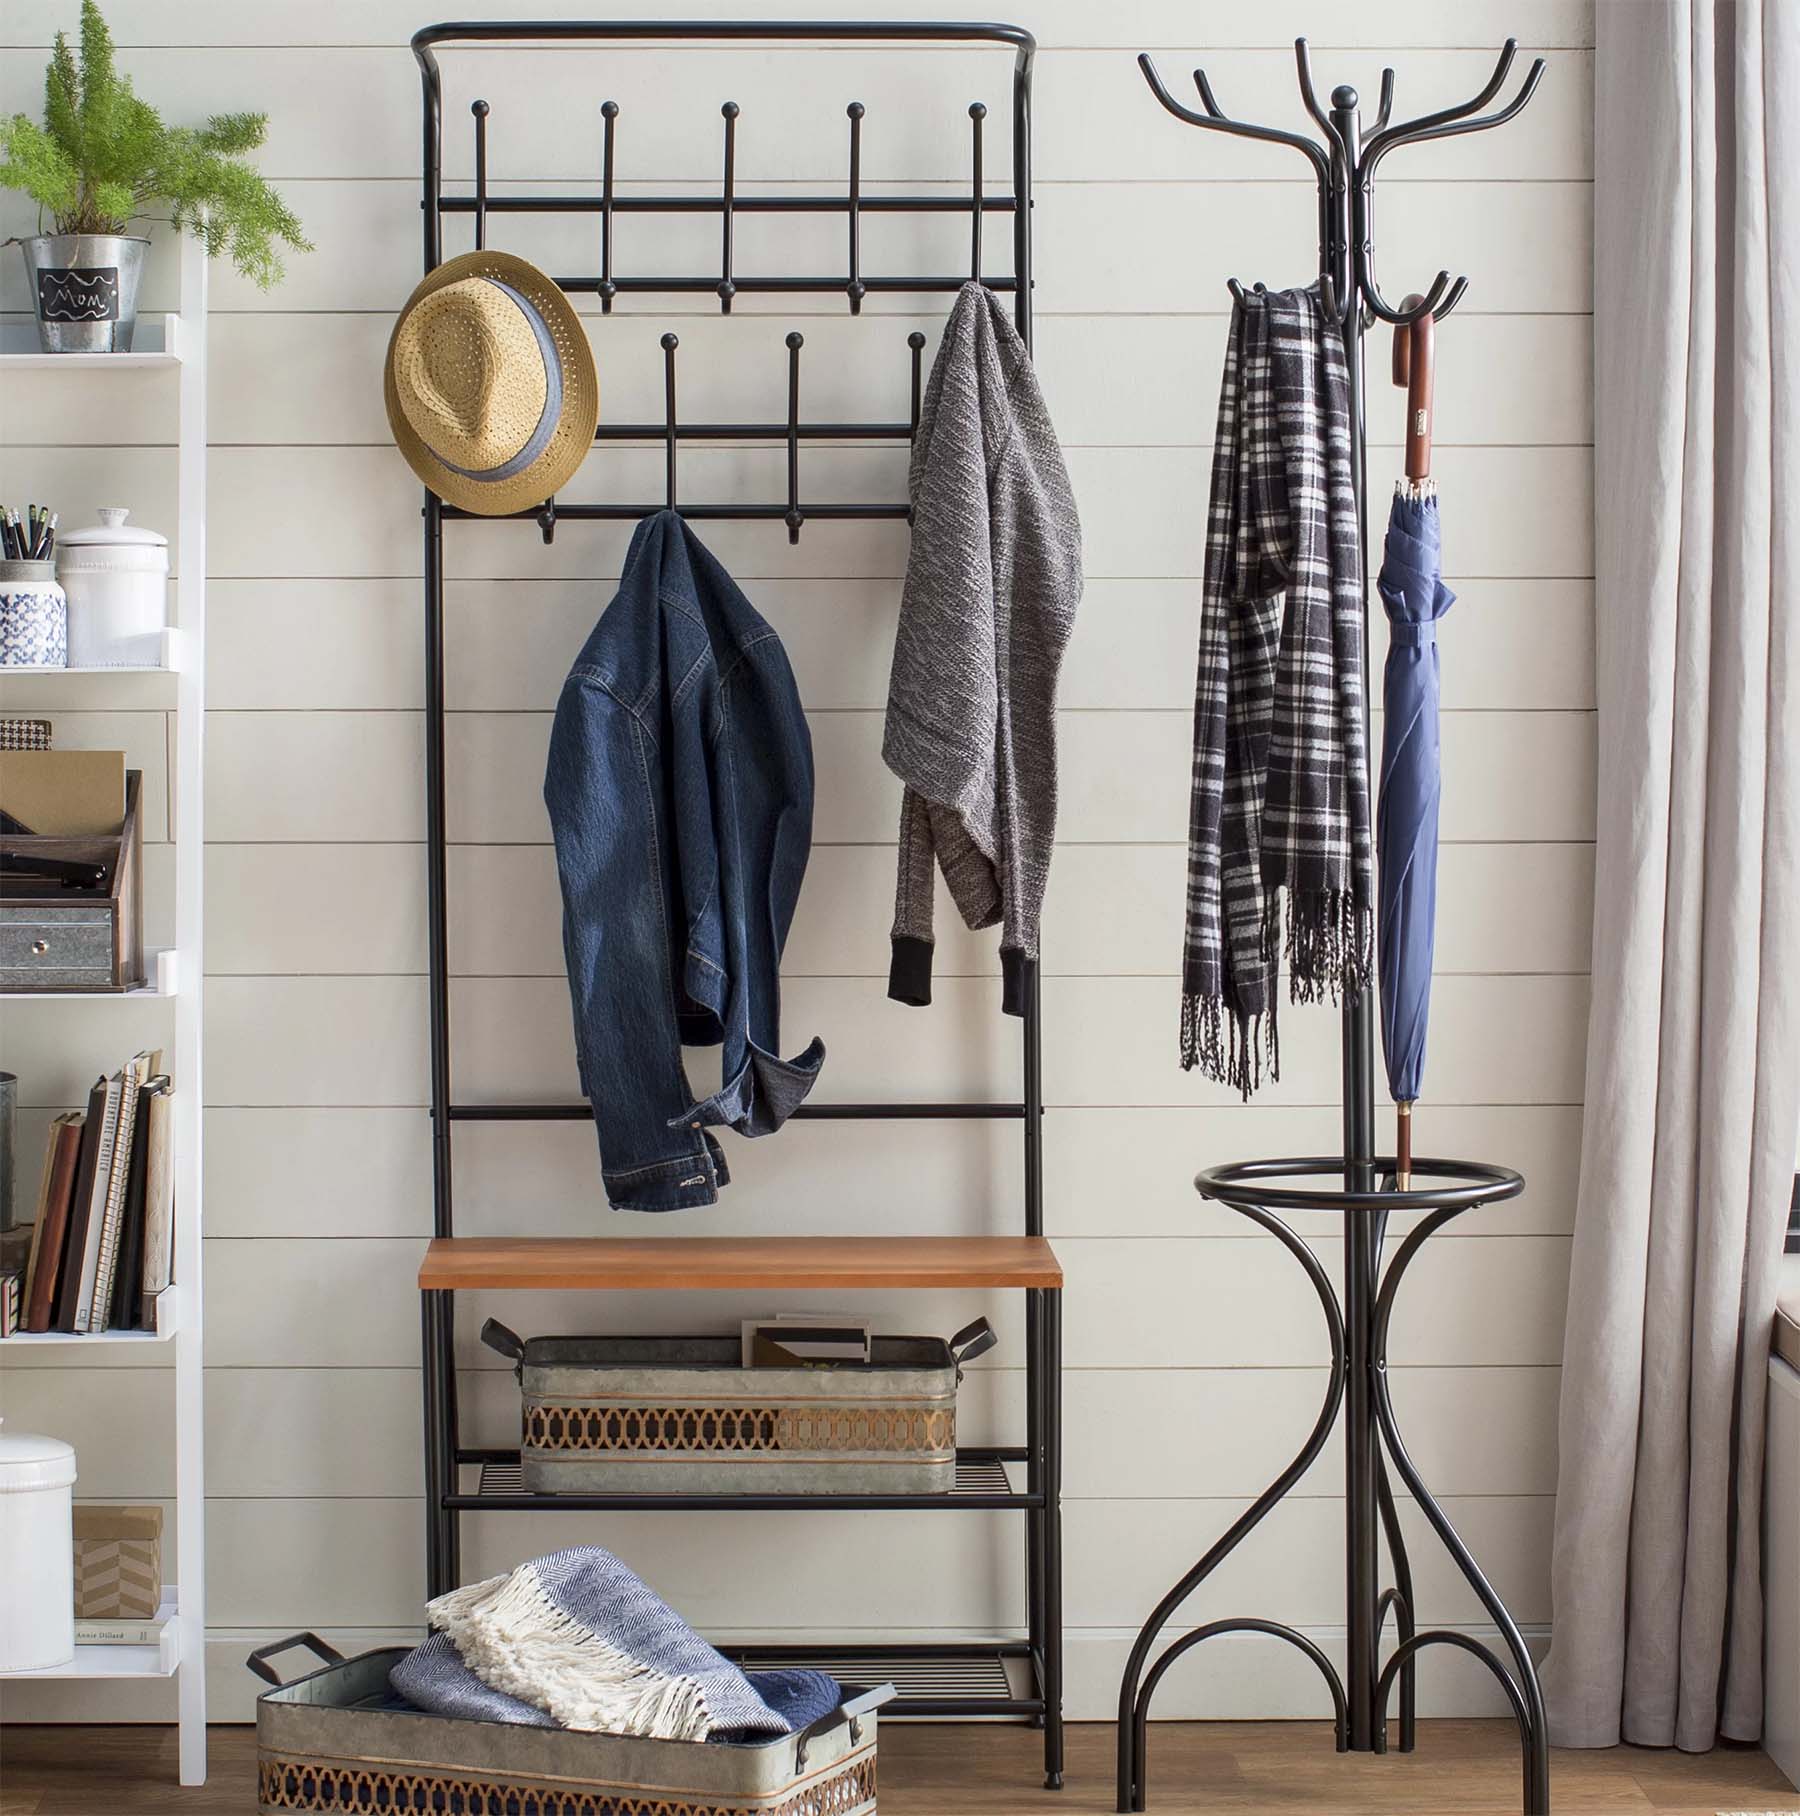 small entry design ideas storage shelves black frame racks coat hanger